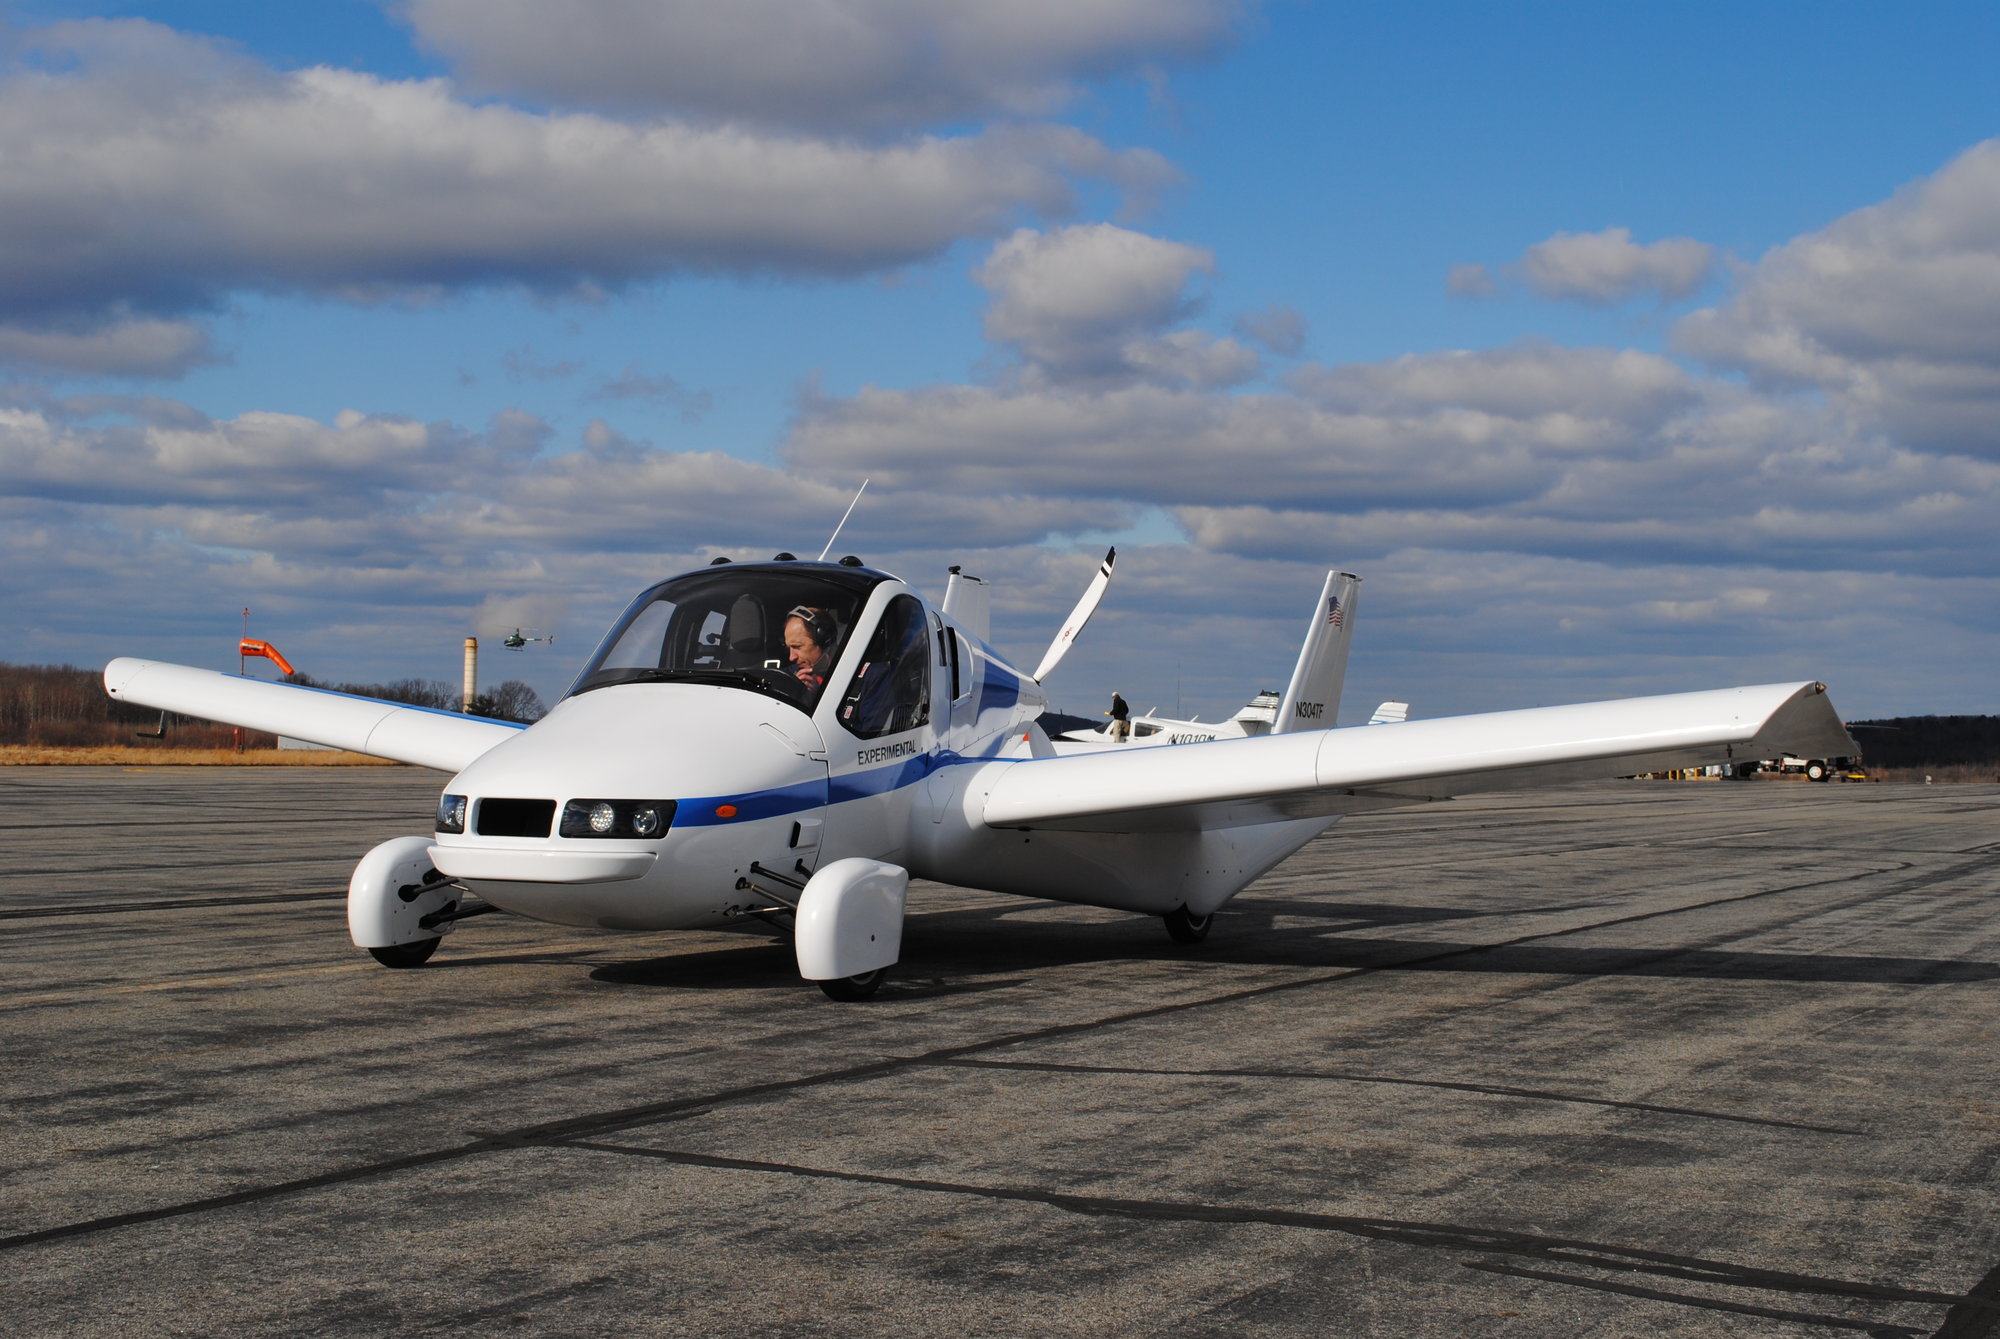 Pravděpodobně první fungující létající auto společnosti Terrafugia - The Transition